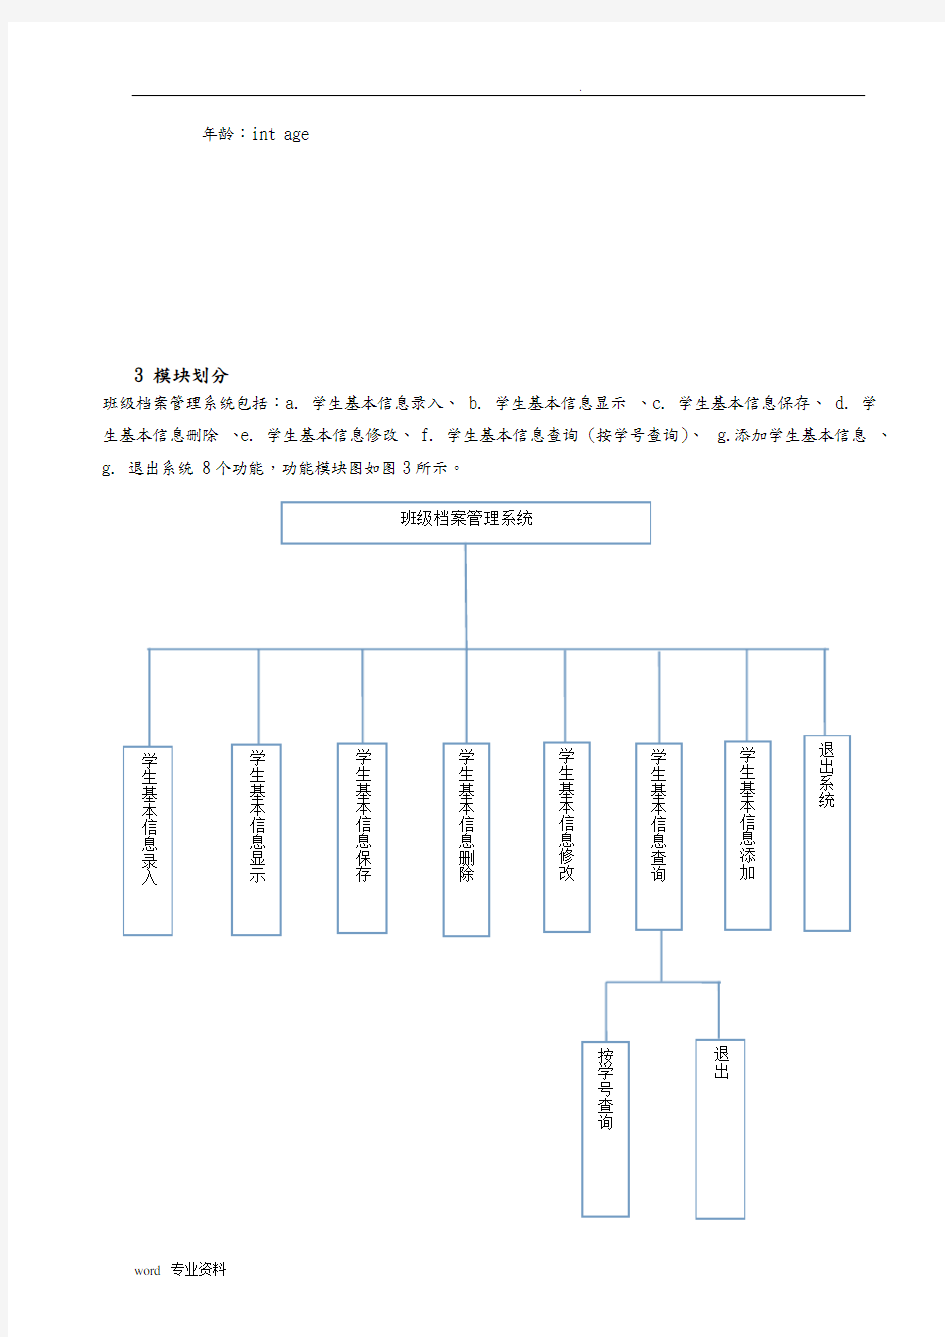 c语言班级档案管理系统